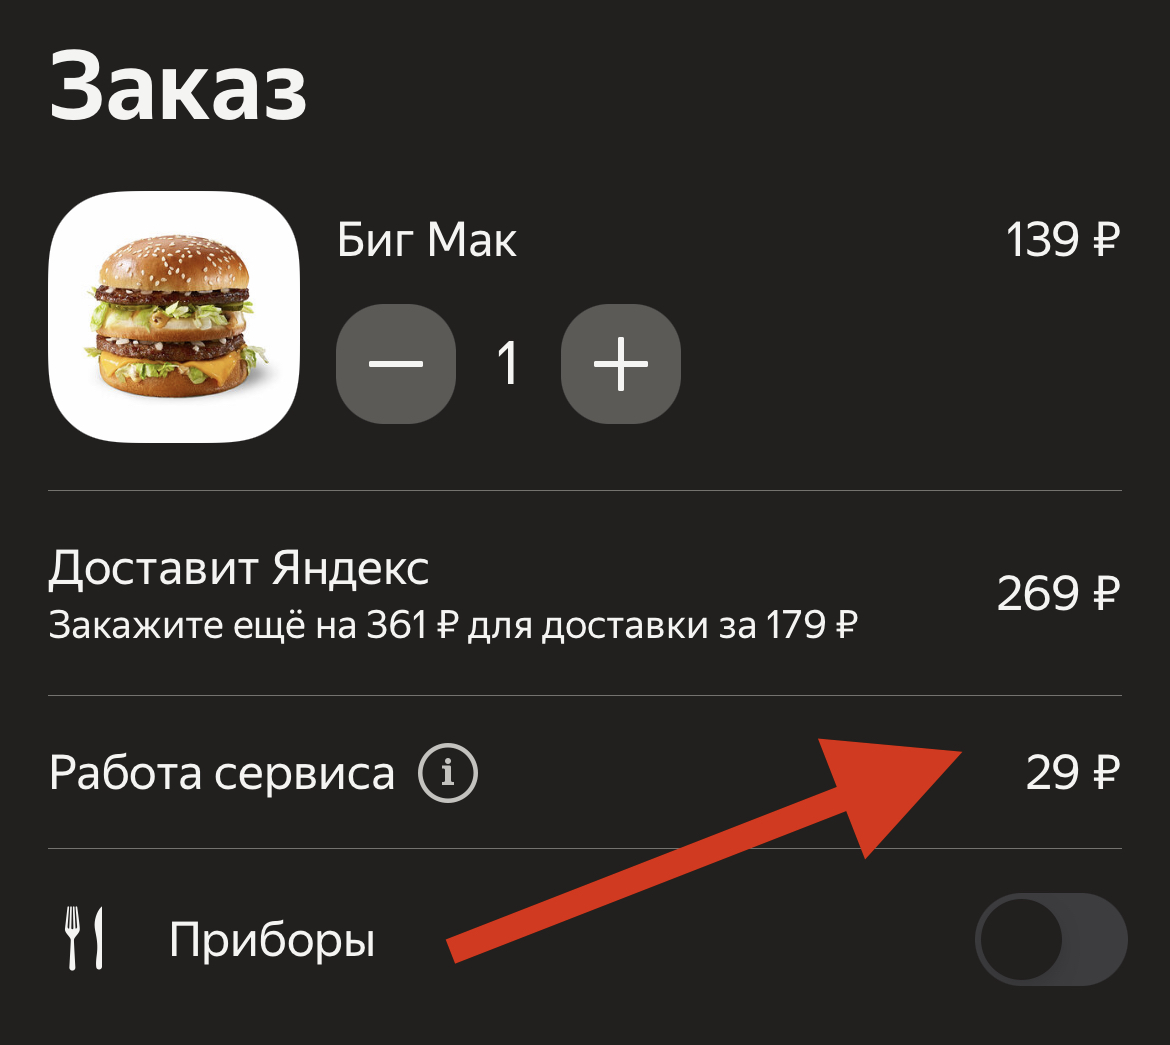 Яндекс.Еда ввела сервисный сбор за каждый заказ